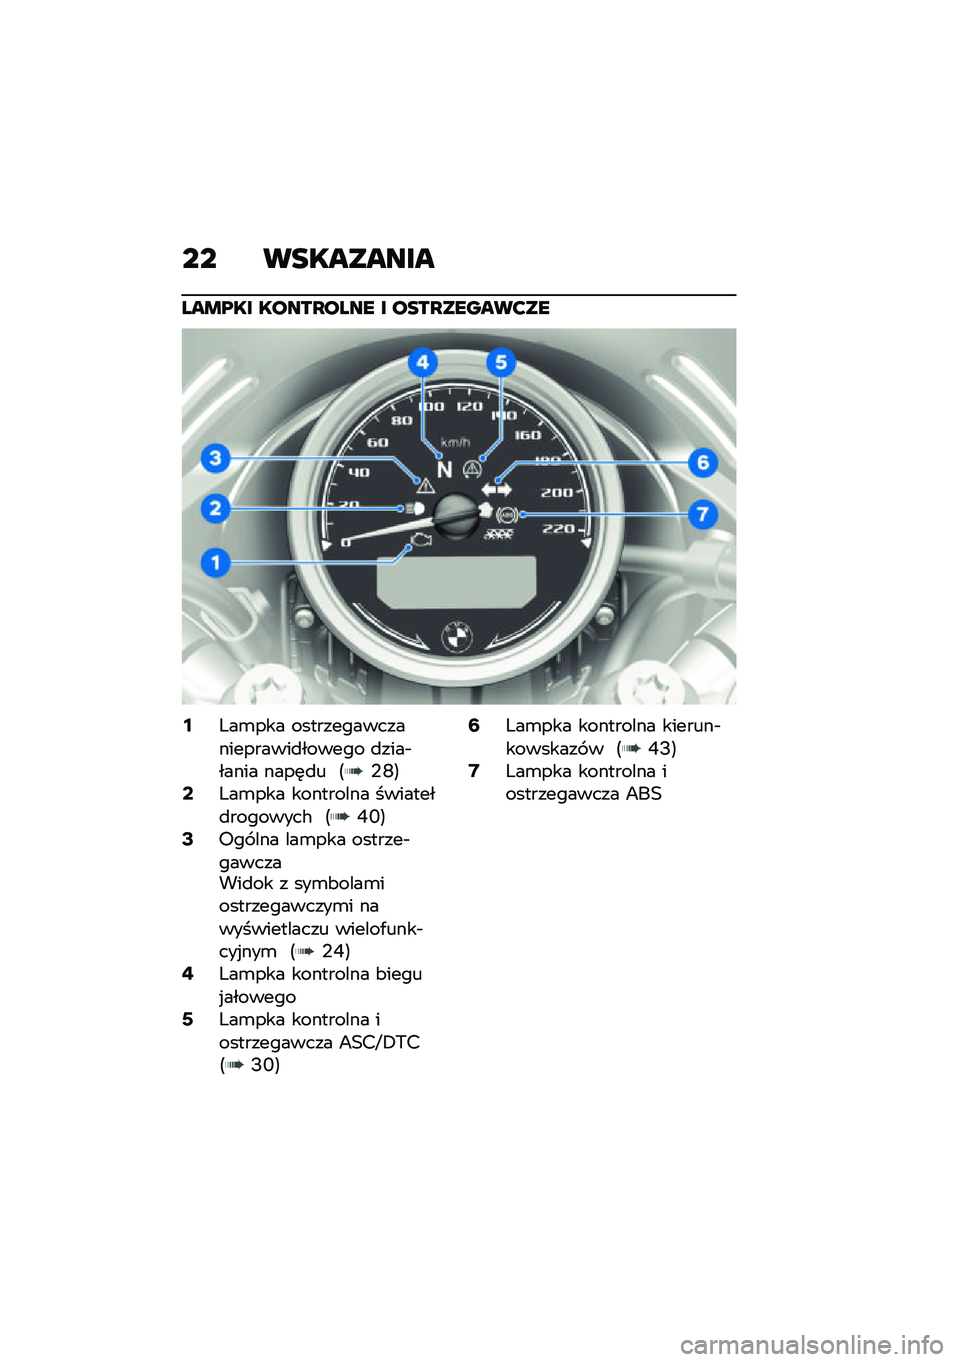 BMW MOTORRAD R NINE T URVAN G/S 2021  Instrukcja obsługi (in Polish) �� ���������
���\b�@�� �����P���� � ����P������?��
�6�X��\b��� ���������������������
������ �
����$����� ����	�
� �<�,�J�=�8